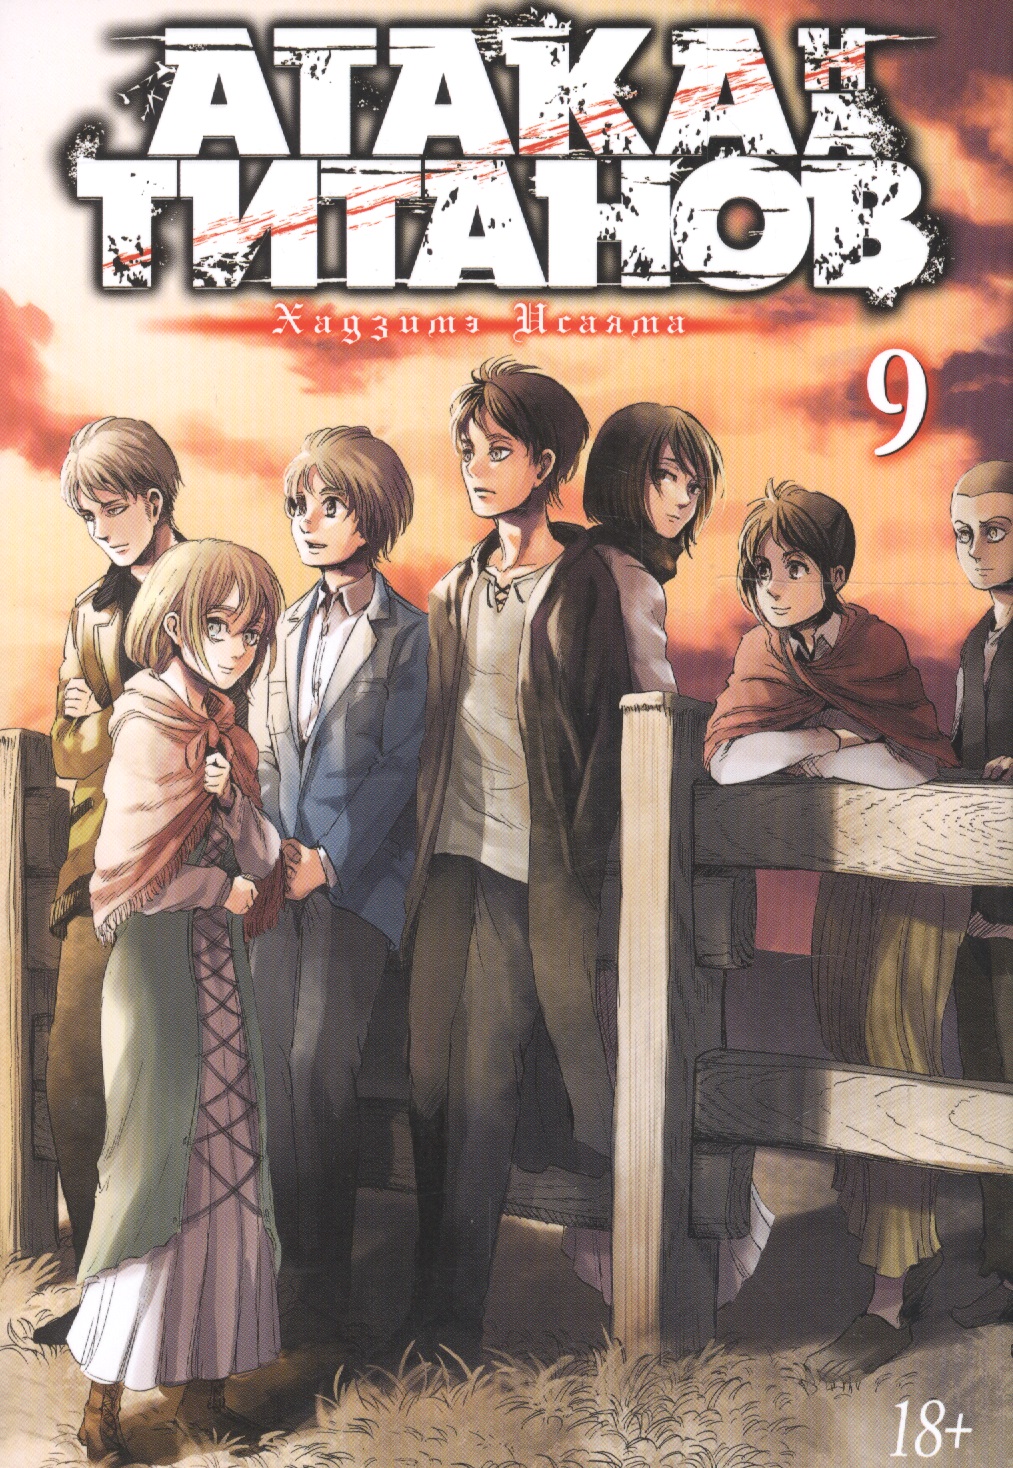 Исаяма Хадзимэ Атака на Титанов. Книга 9 манга азбука атака на титанов книга 9